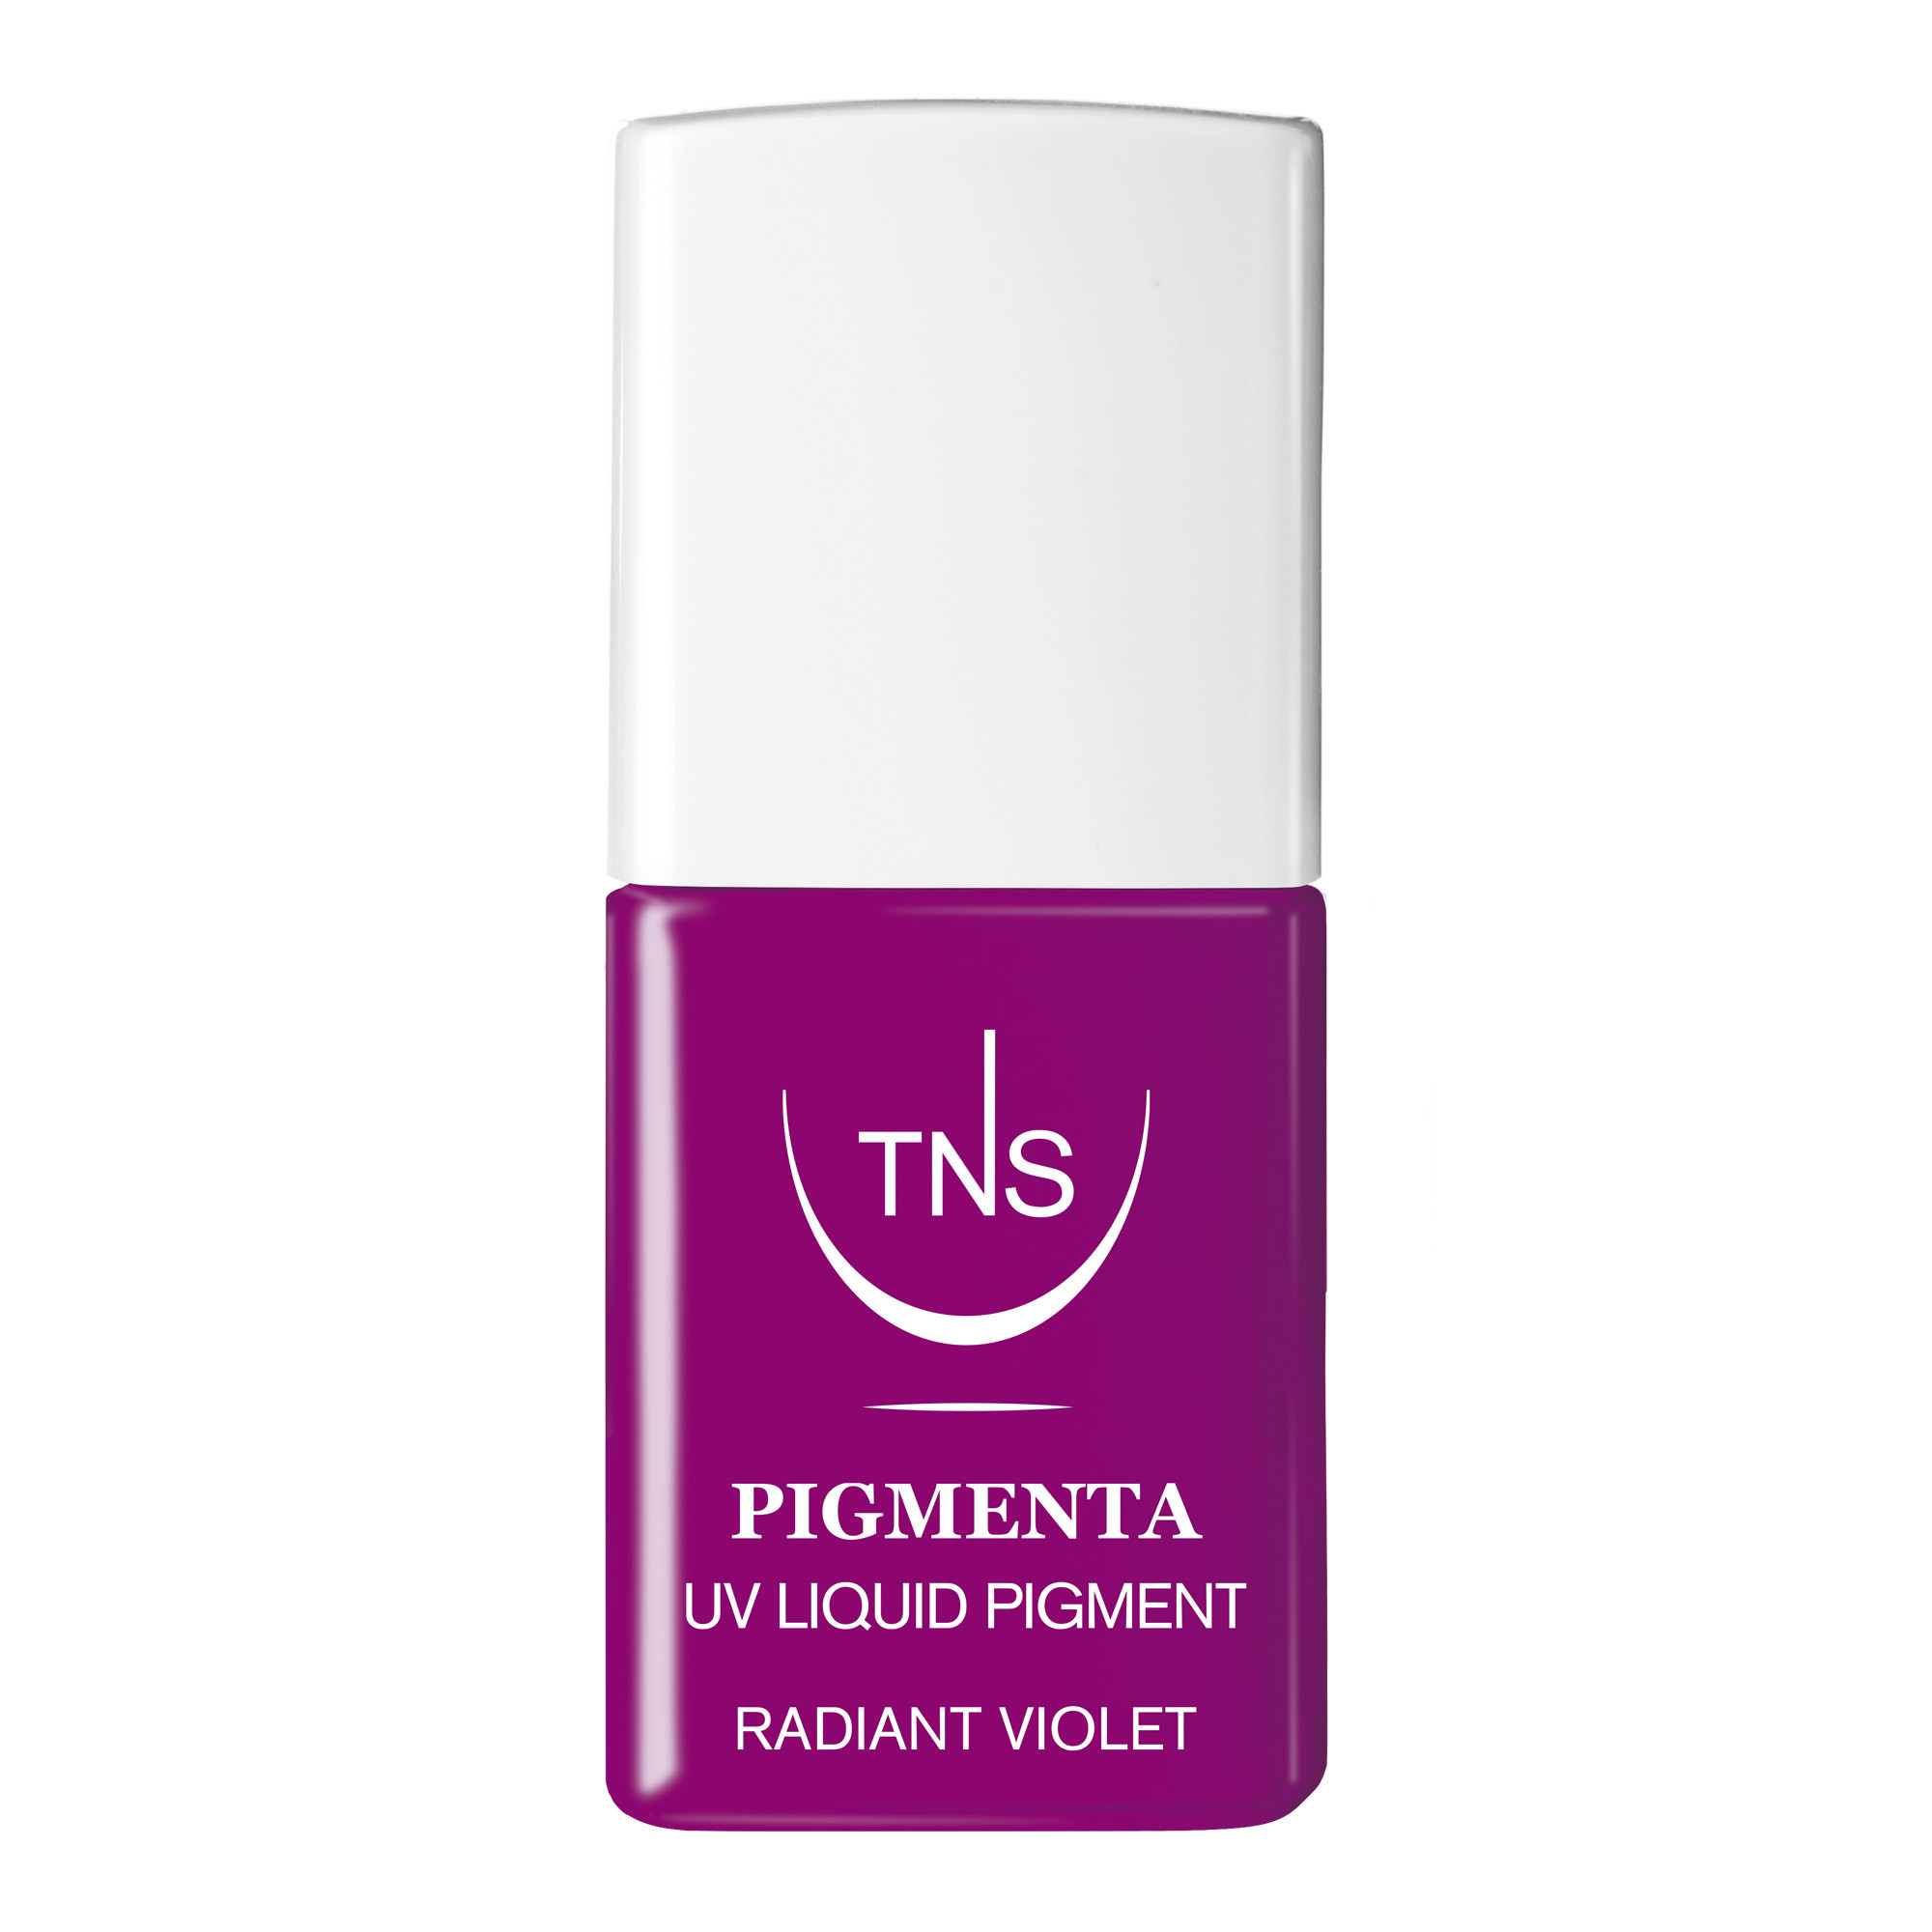 UV Flüssigpigment Radiant Violet hell violett 10 ml Pigmenta TNS